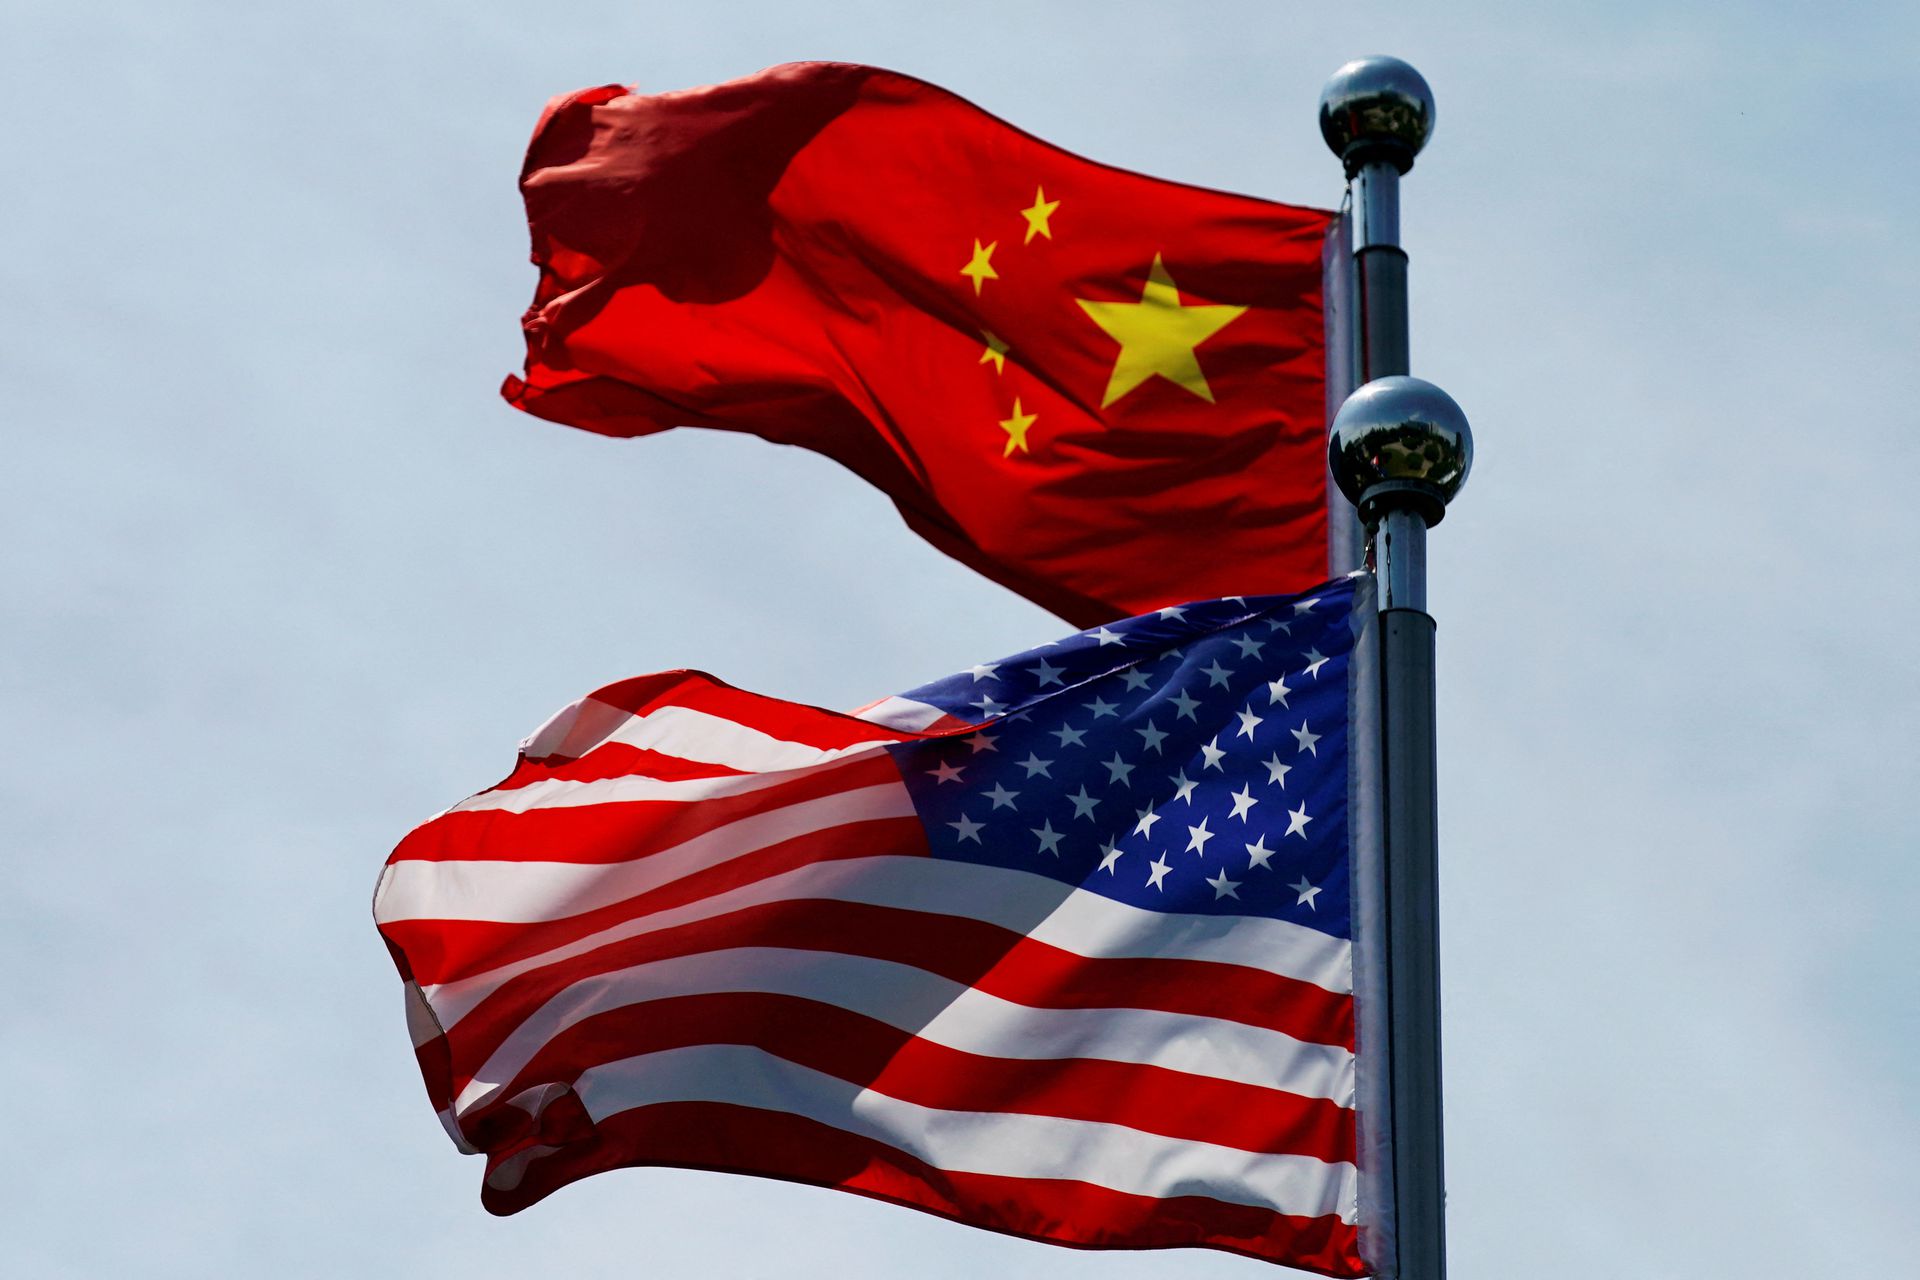 Ngoại trưởng Mỹ: Mỹ đã làm chậm kế hoạch gián điệp toàn cầu của Trung Quốc - Ảnh 1.